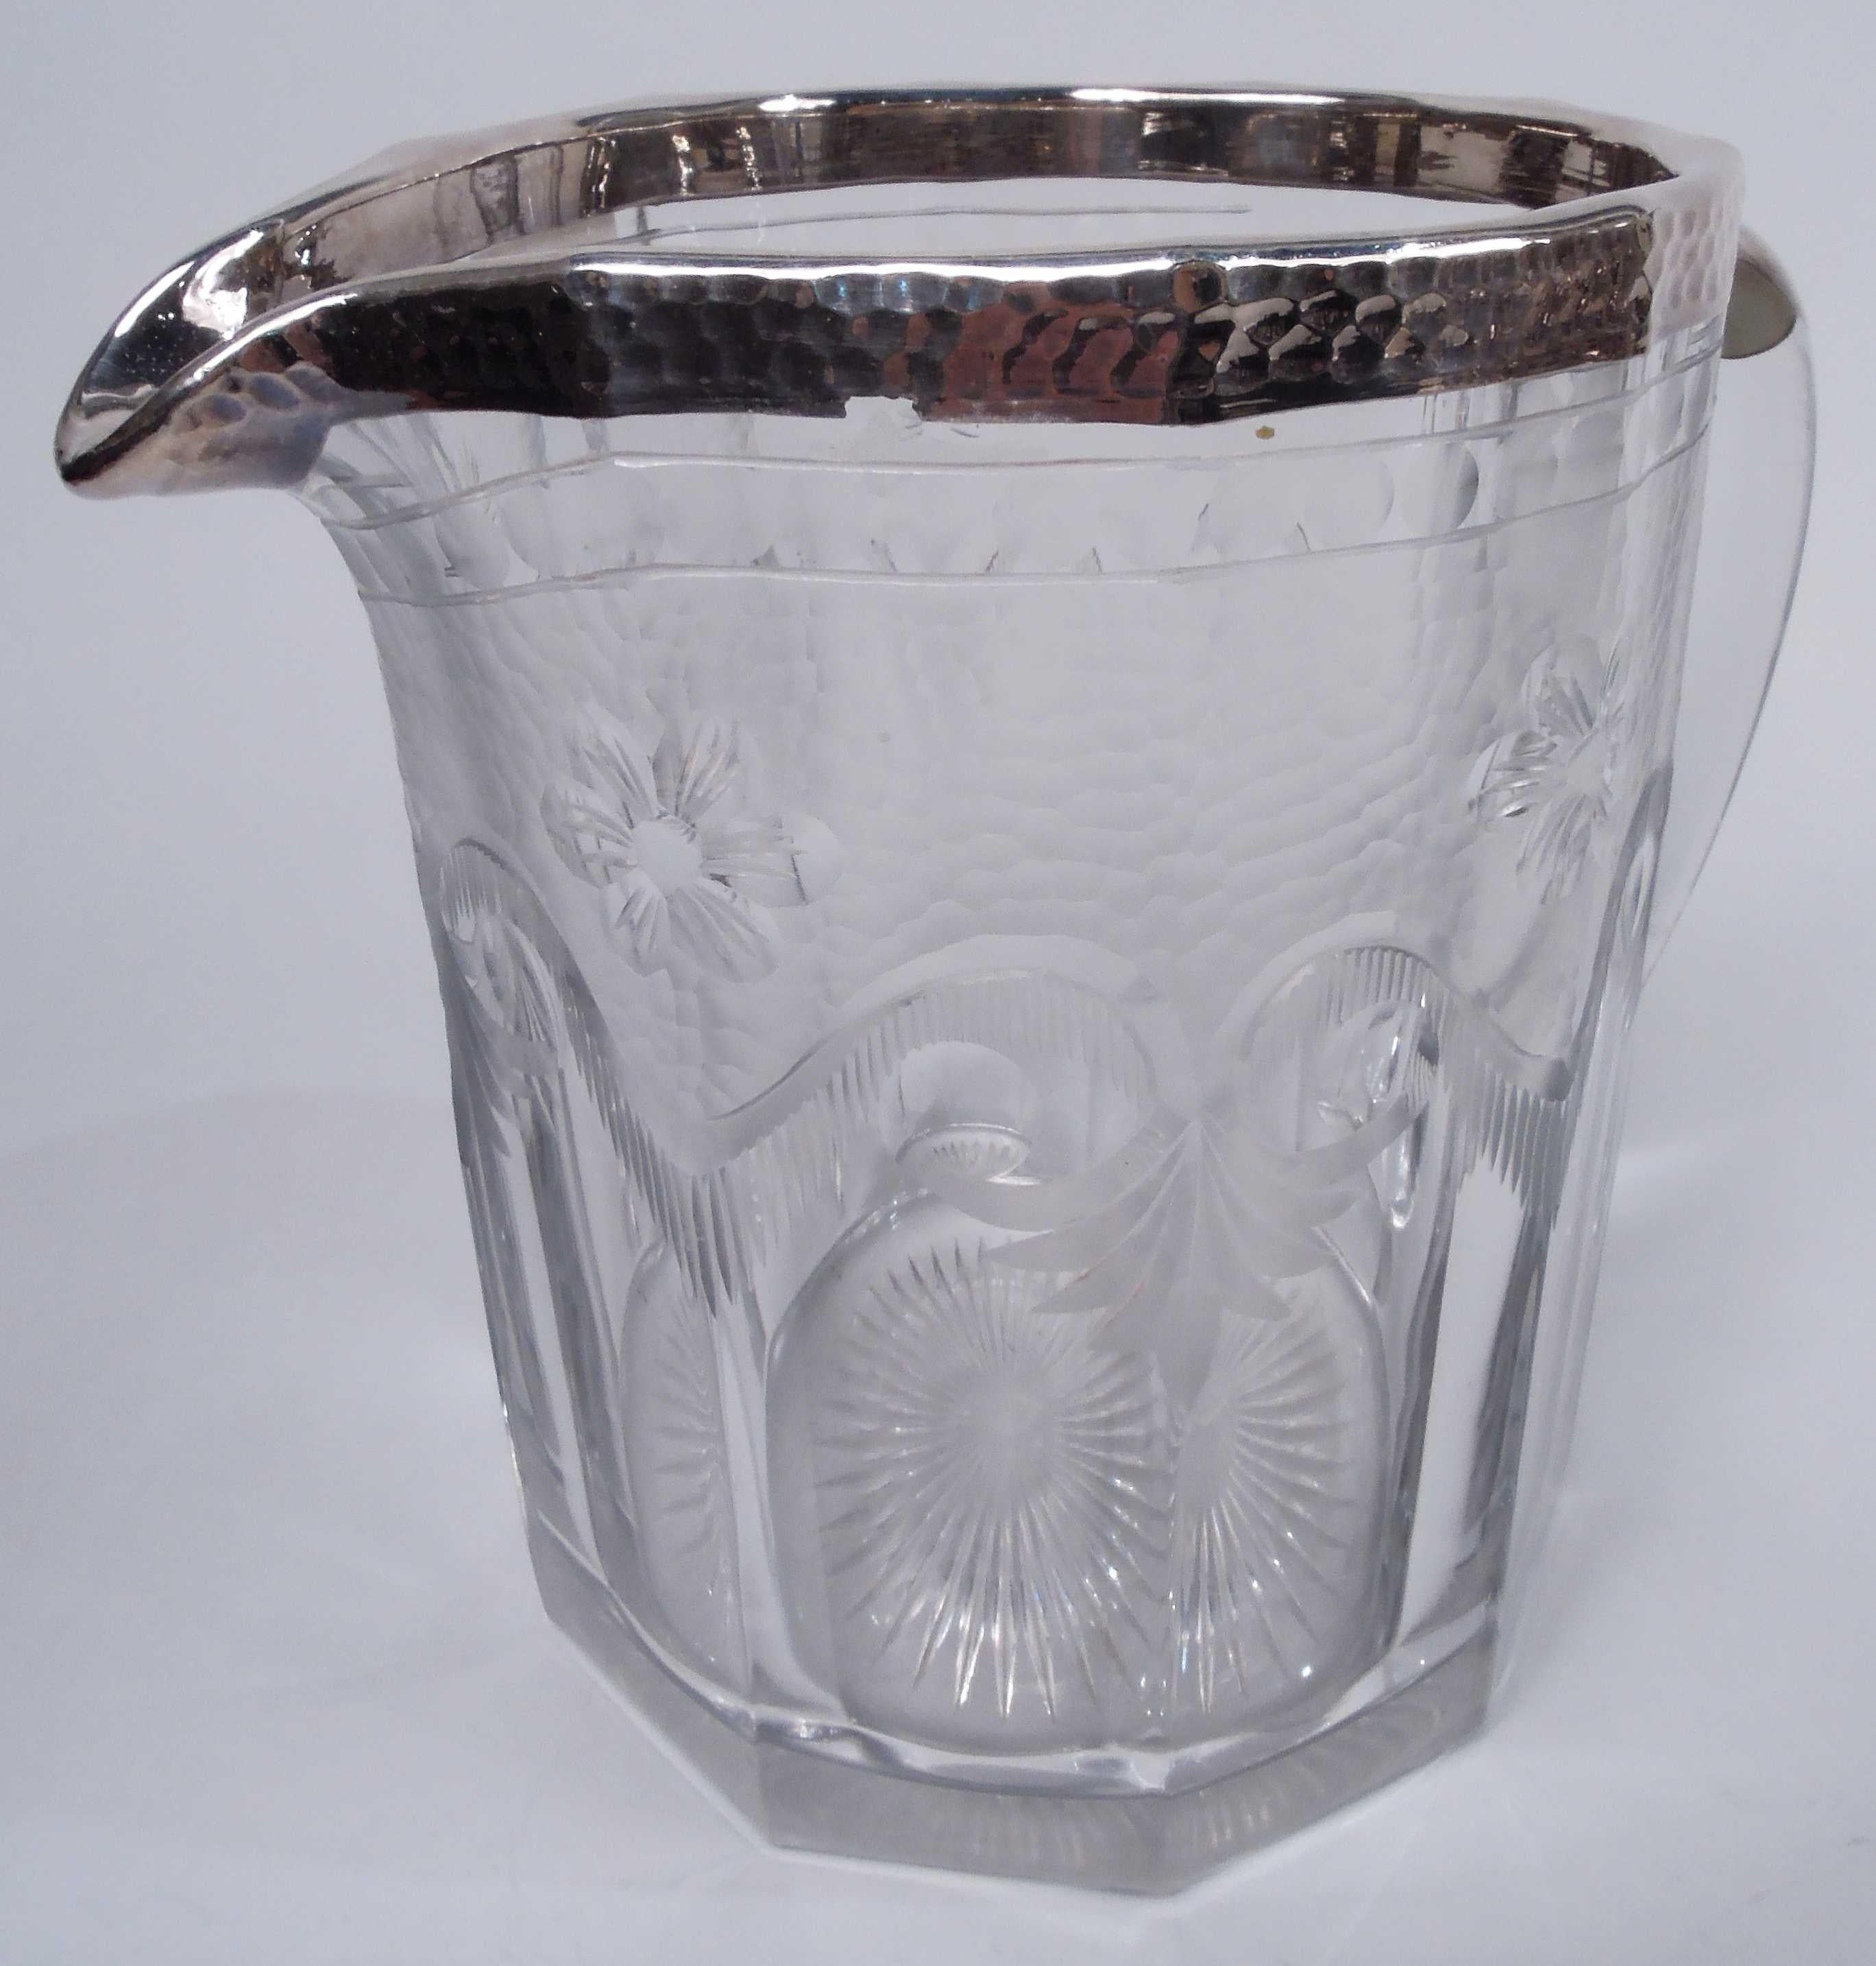 Pichet à eau en verre et argent de style Régence édouardienne. Fabriqué par Heisey dans l'Ohio, vers 1910. La moitié supérieure présente des perles gravées à l'acide, des craquelures et des volutes avec des feuilles pendantes. La bouche et le bec